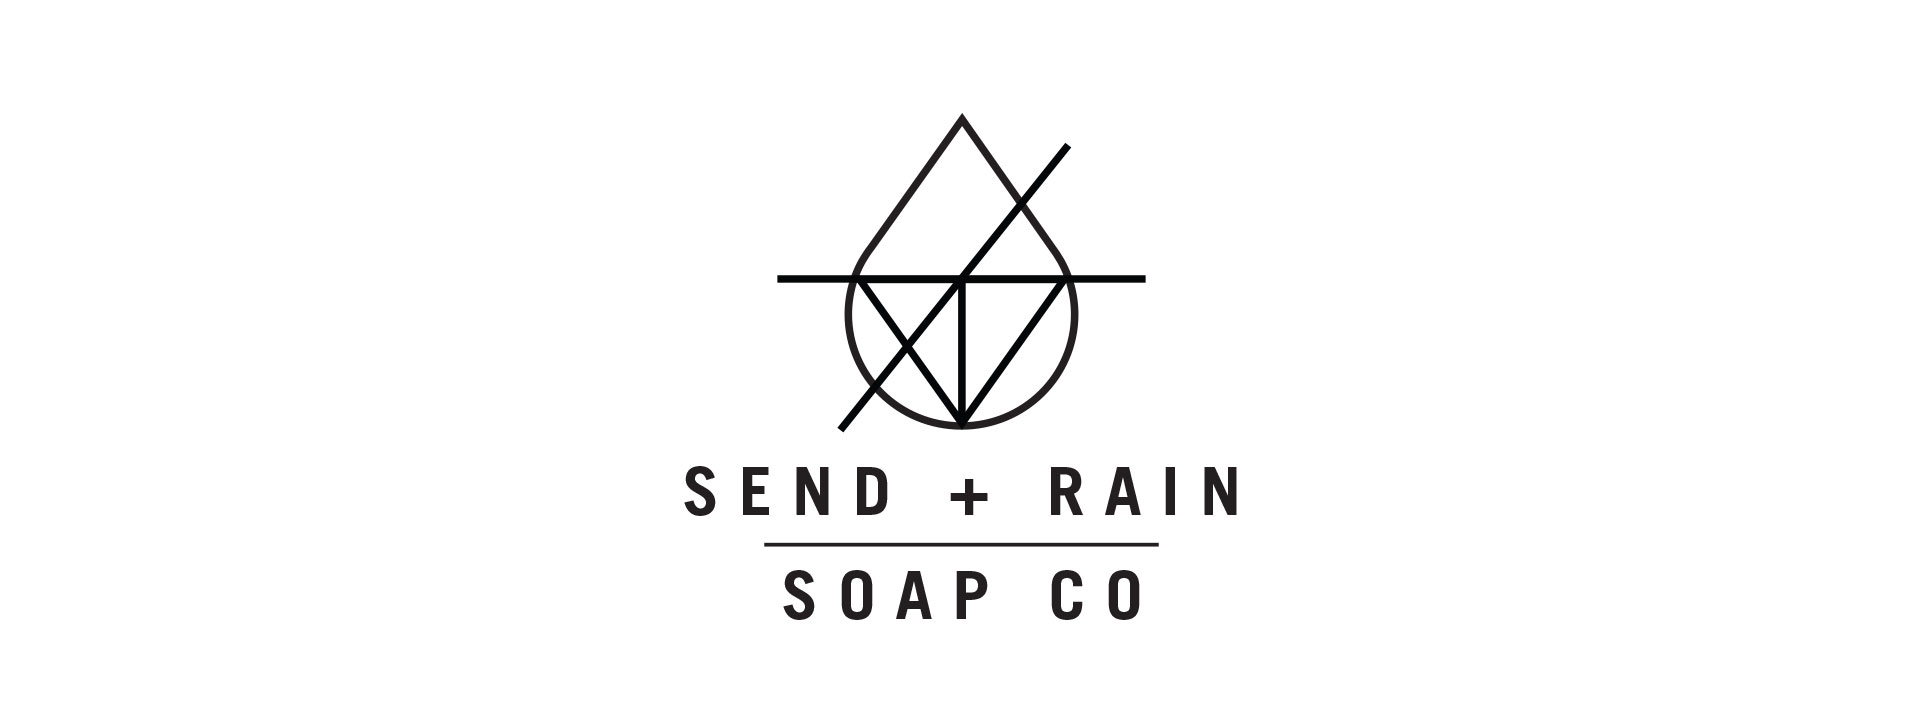 Send Rain soap company logo design